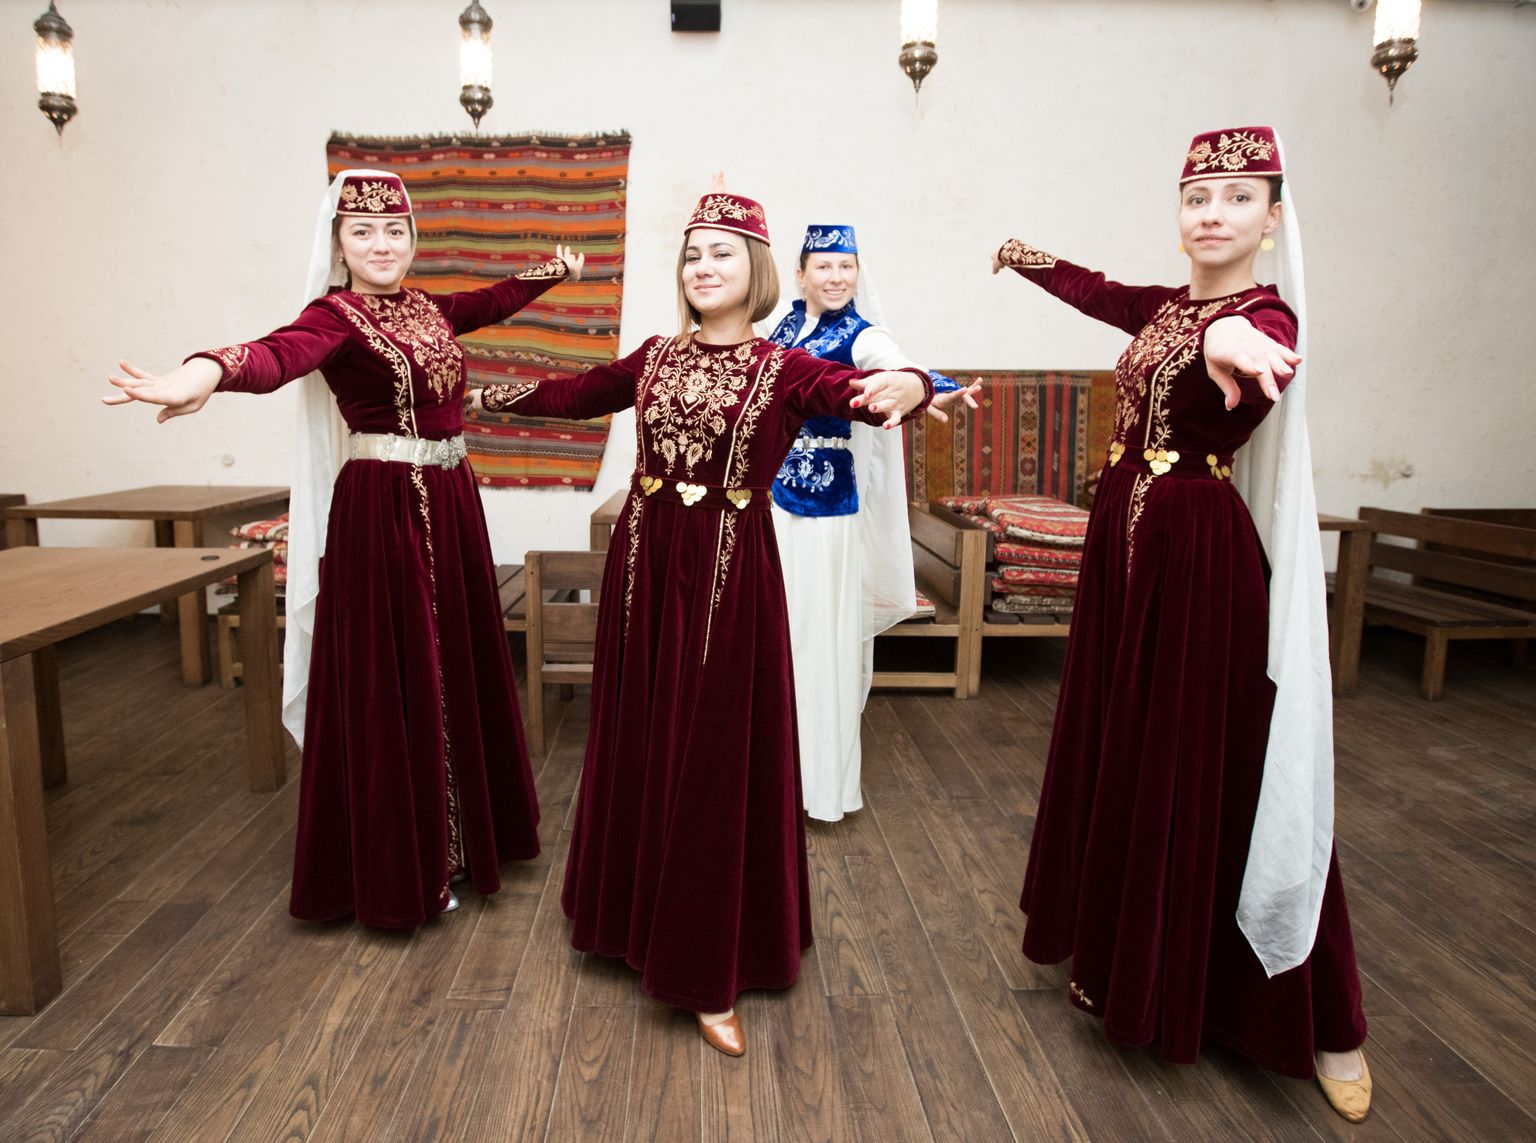 Kiievis tegutsevas krimmitatarlaste rahvatantsurühmas Badem tantsivad Krimmist ära kolinud (vasakult) Aziza, Elnara ja Lenura. Nende taga tantsib Olga, kes on pärit Donbassist, aga ema poolt samuti krimmitatarlane. Badem tähendab mandli südamikku, mis krimmitatarlastele sümboliseerib veel abiellumata neiut.